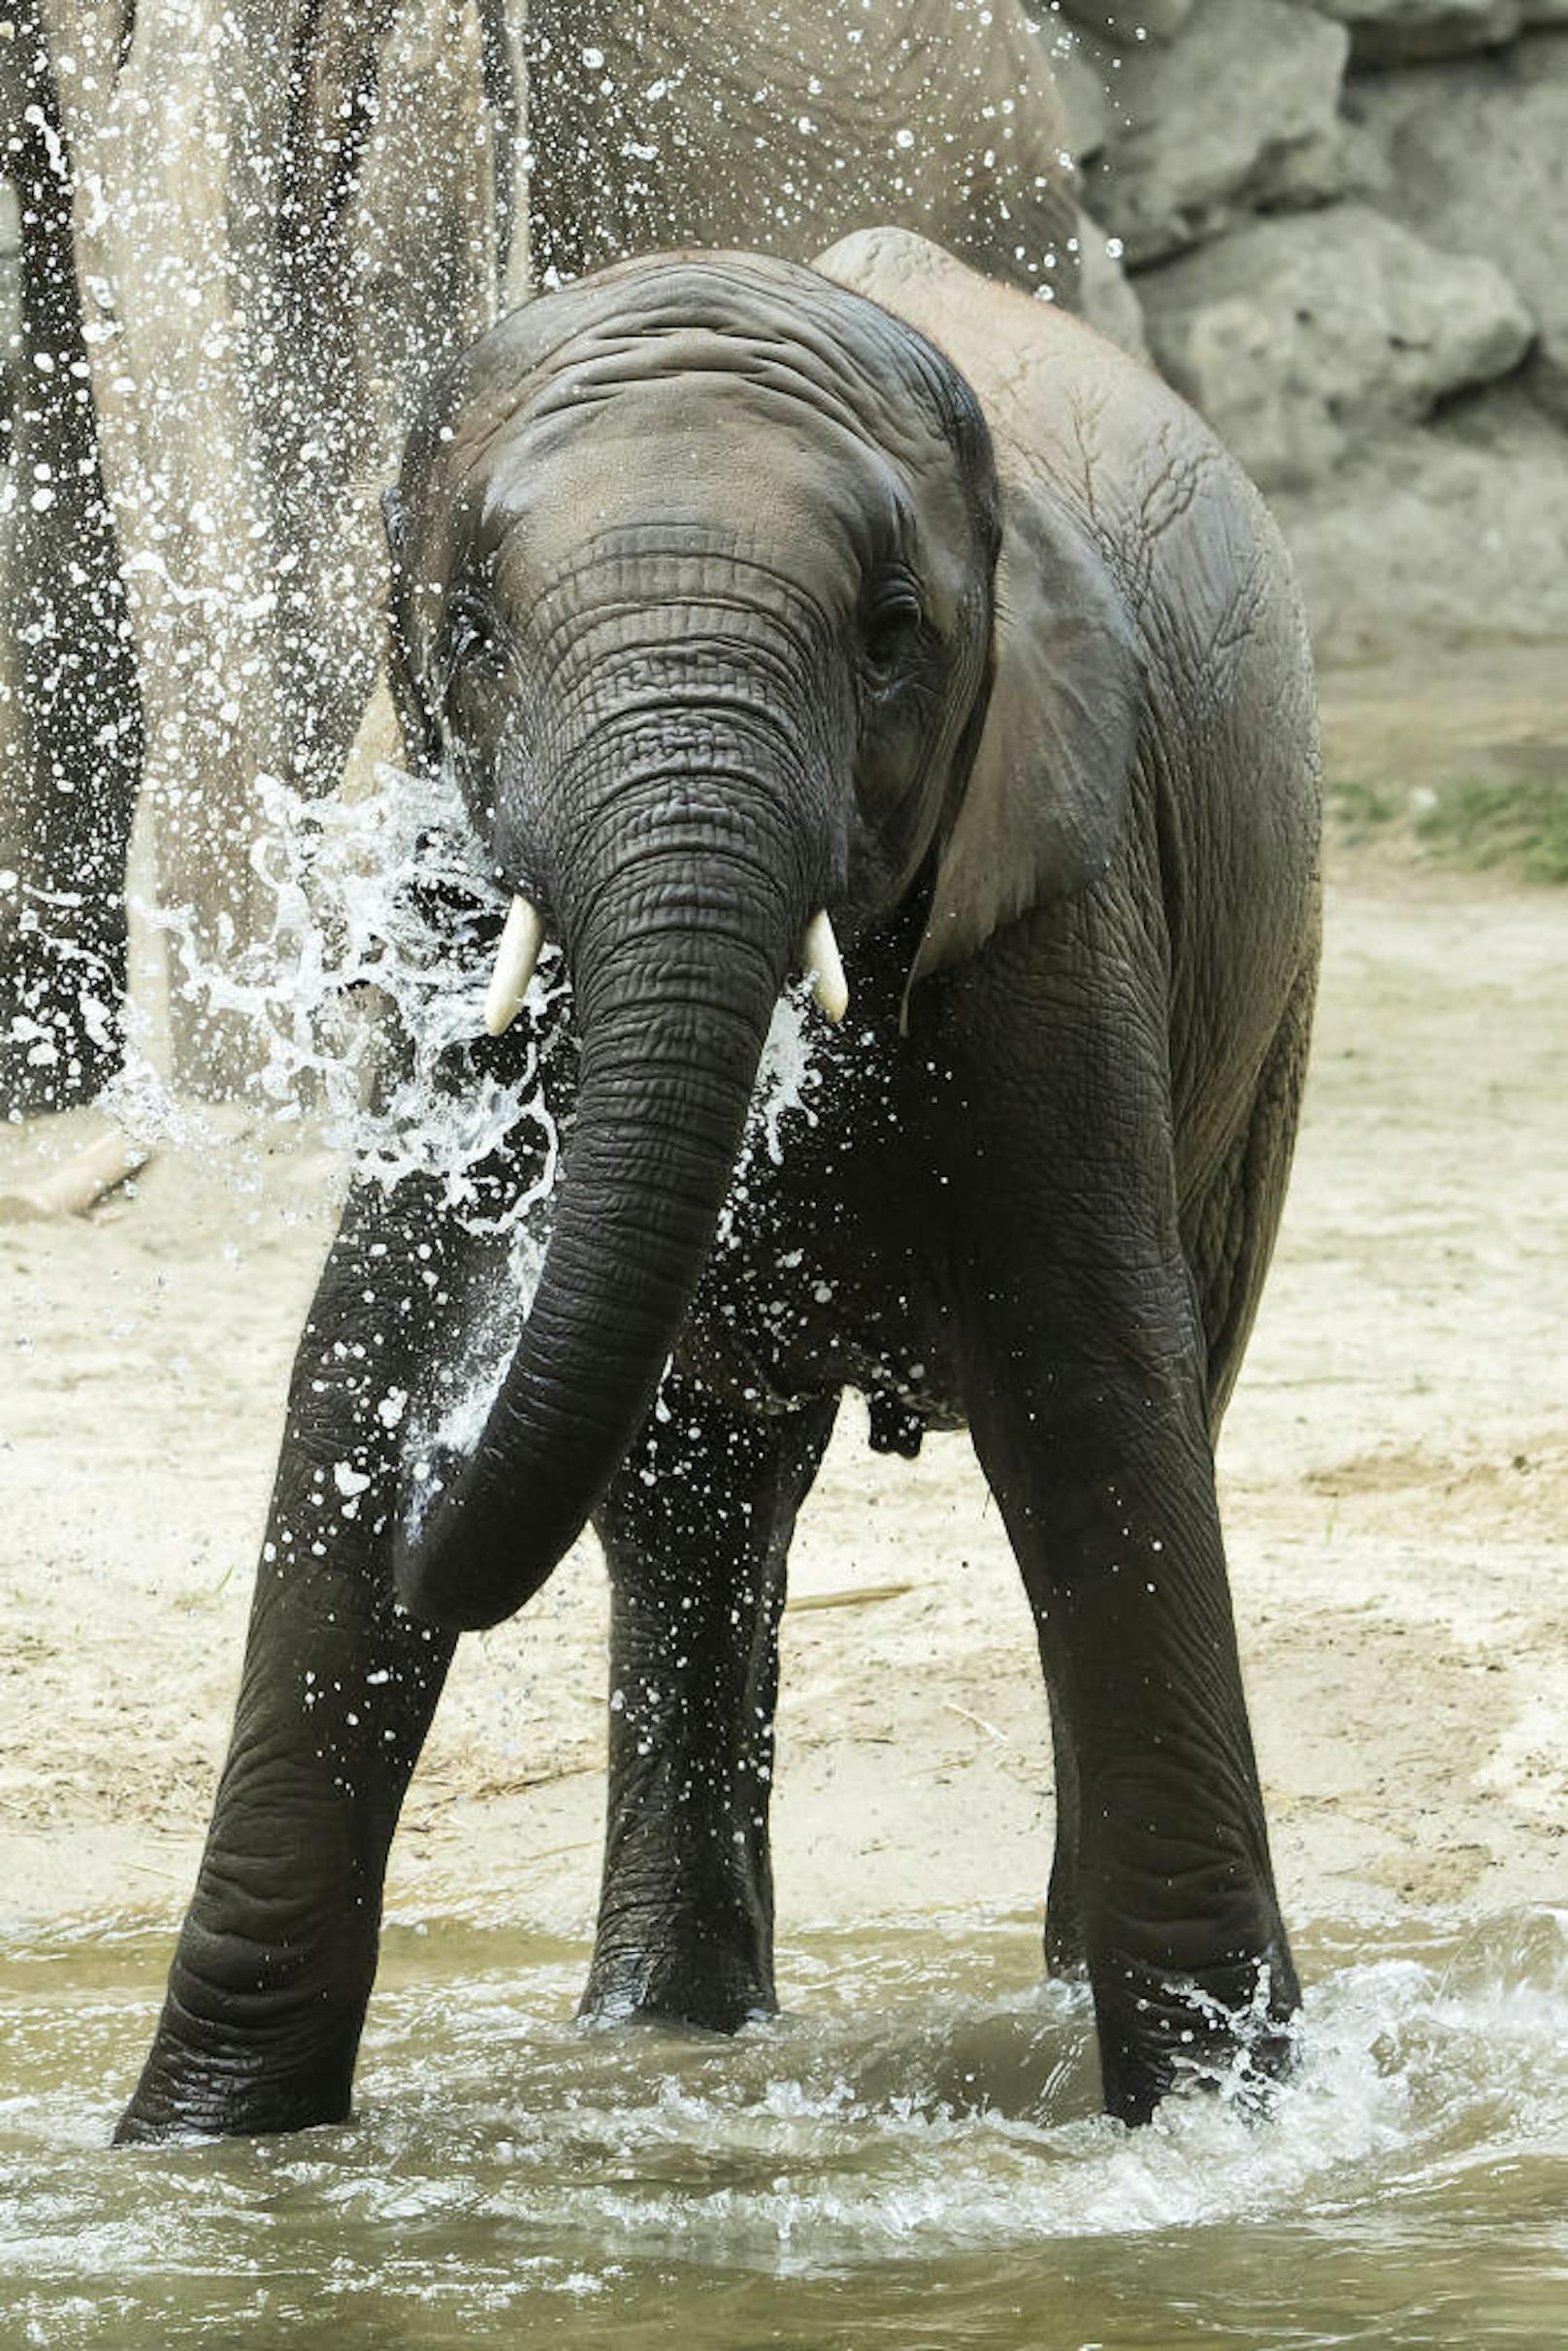 Um 15 Uhr wird der Geburtstag im Elefantenhaus gefeiert.